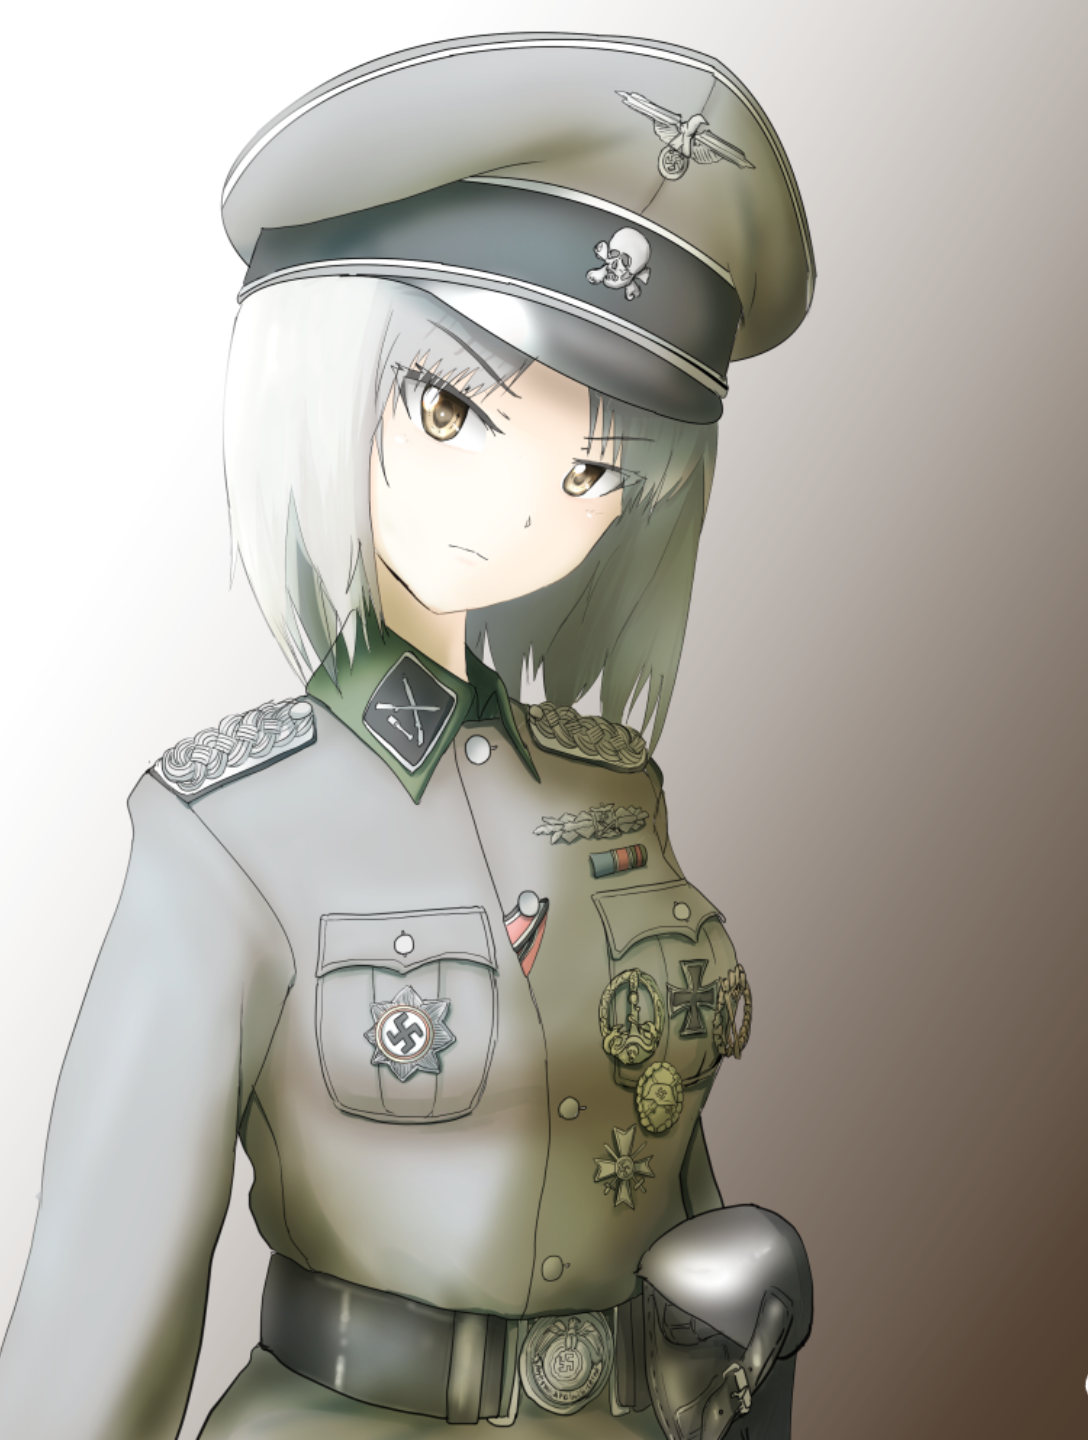 德意志军装 动漫图片